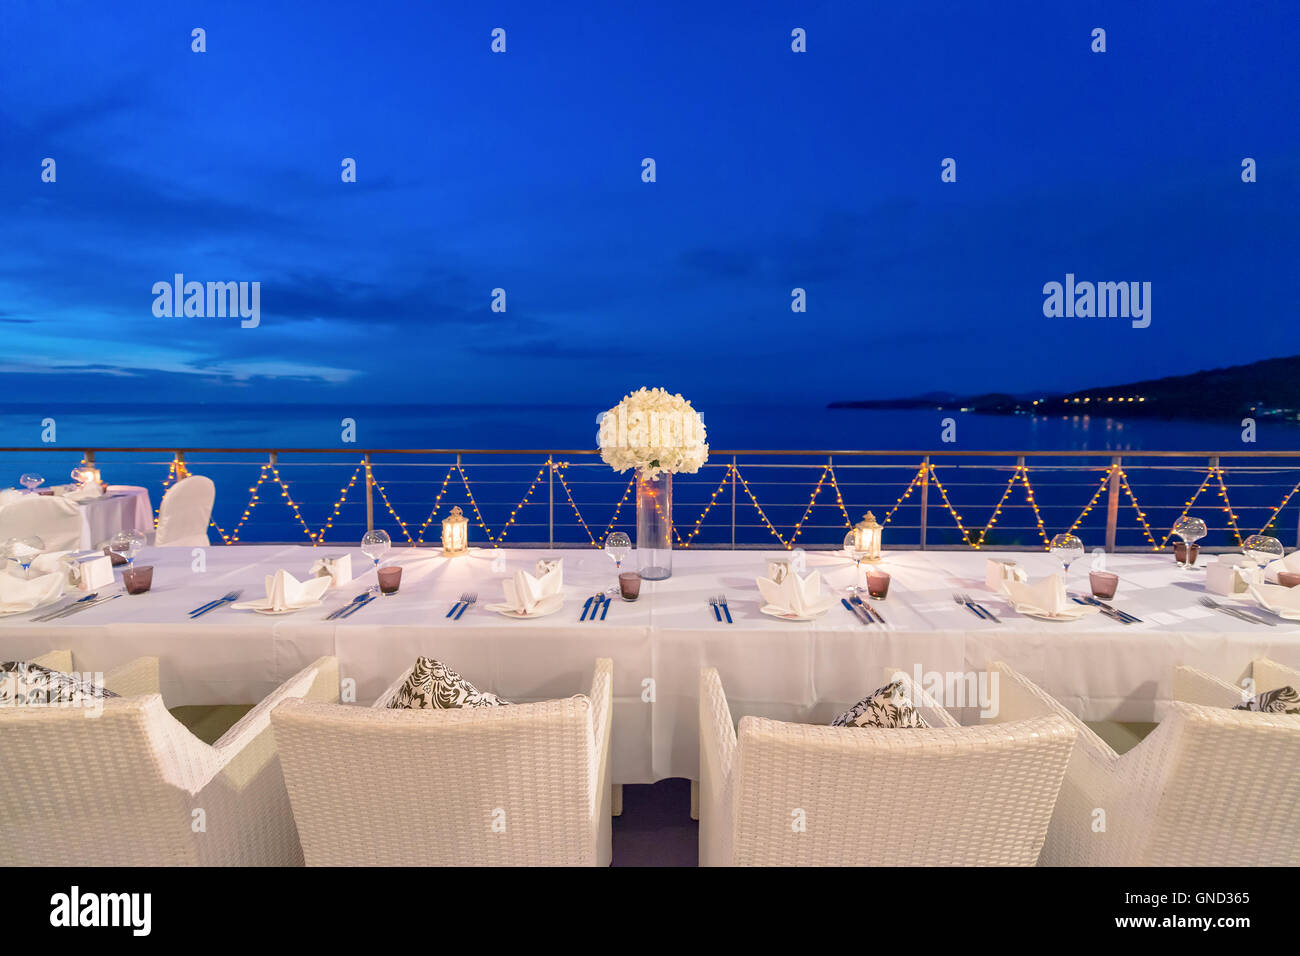 Romantisches Abendessen Einrichtung, Dekoration mit Kerzenlicht. Selektiven Fokus. Dämmerung. Stockfoto